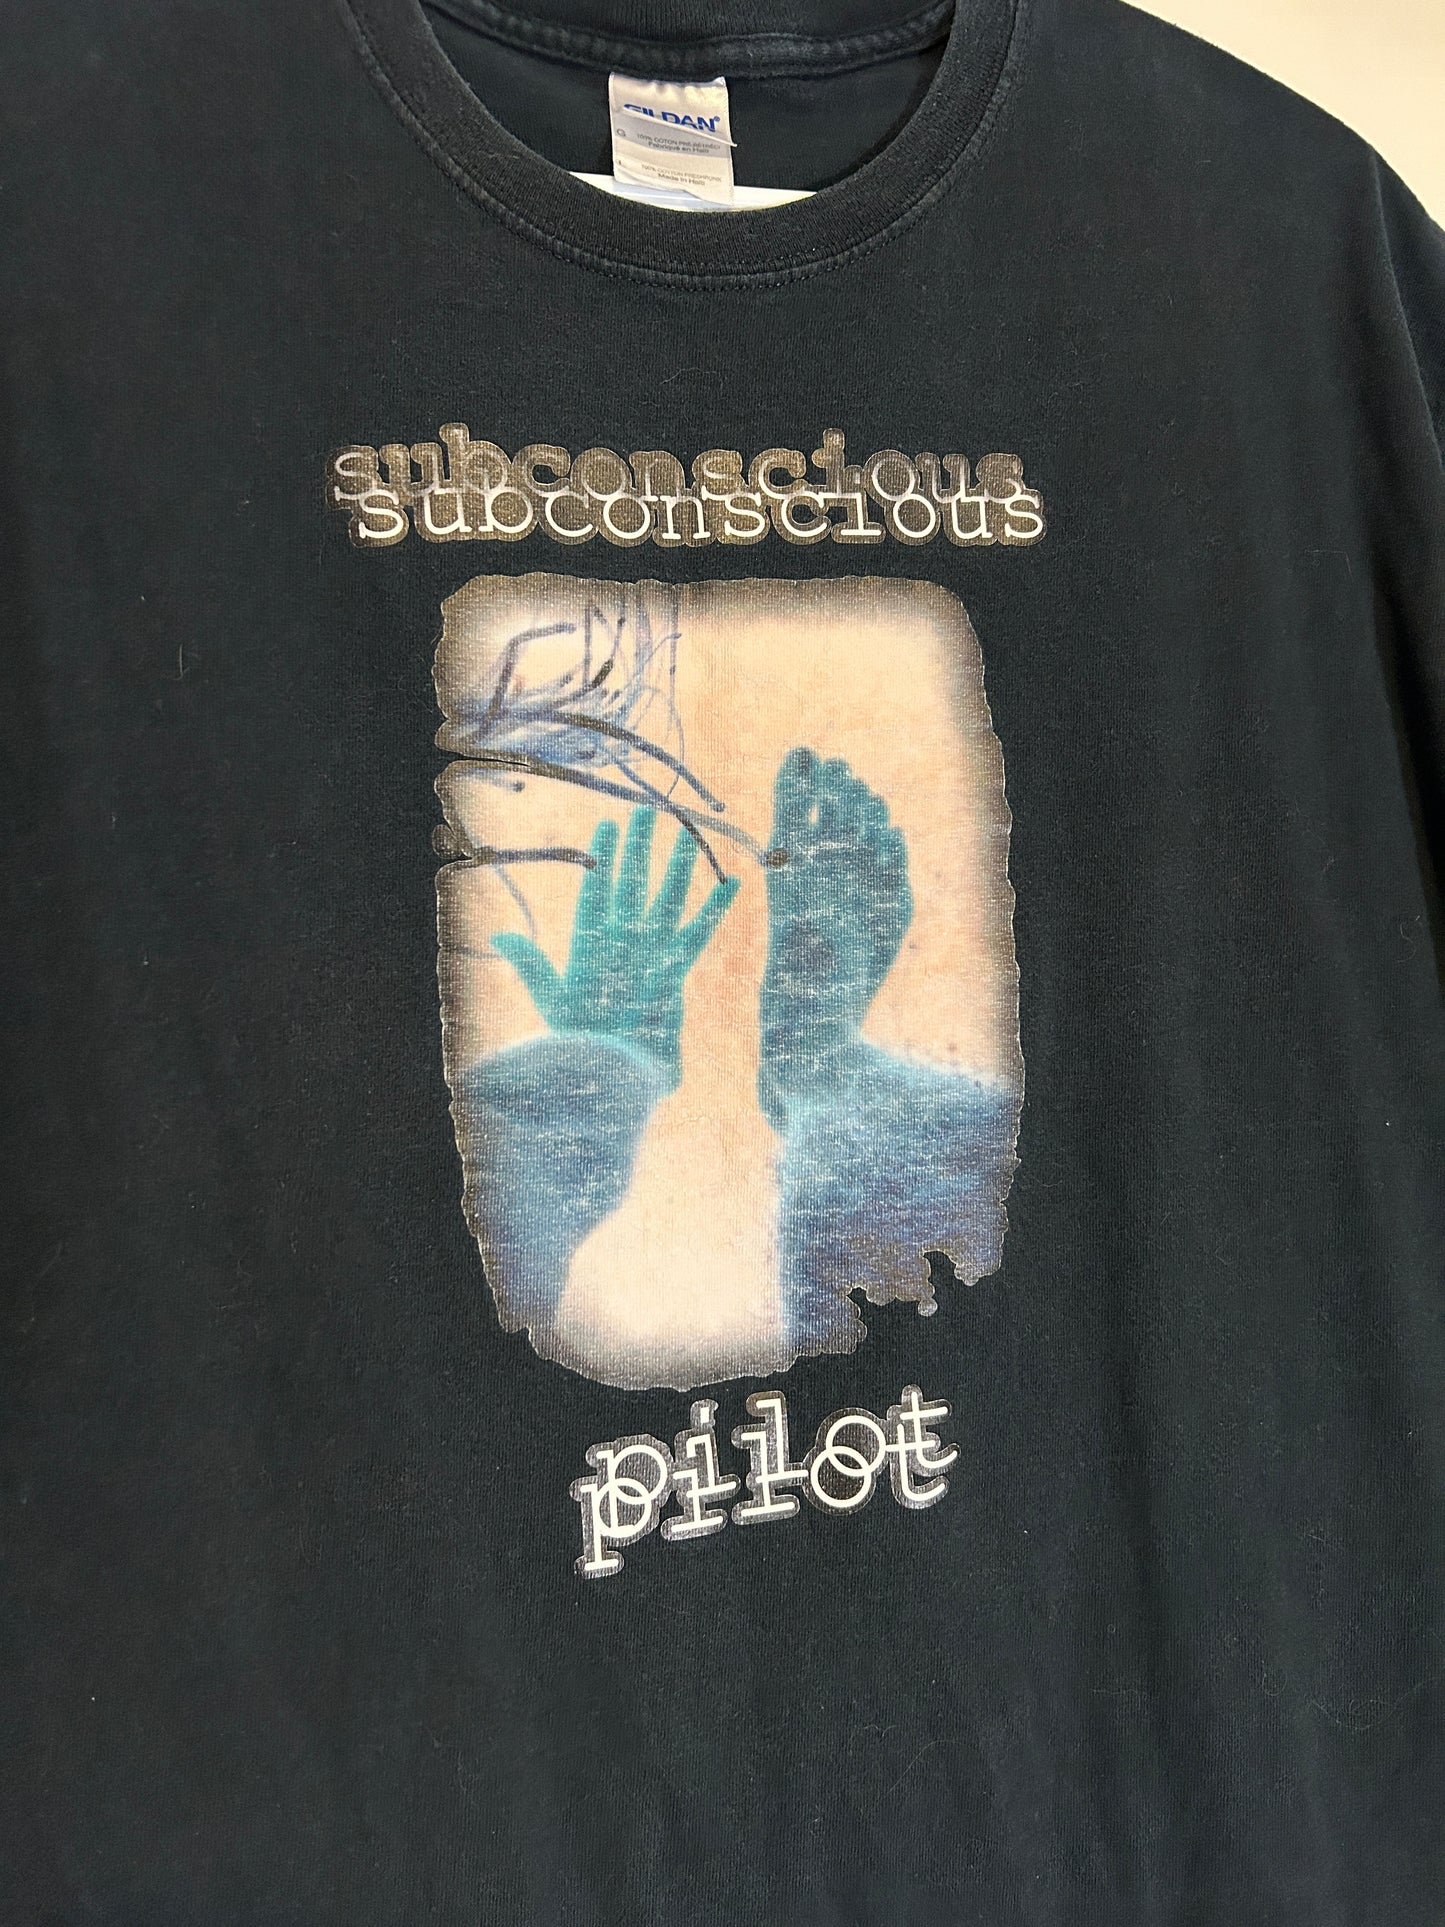 Subconscious Pilot Band Tee (L)